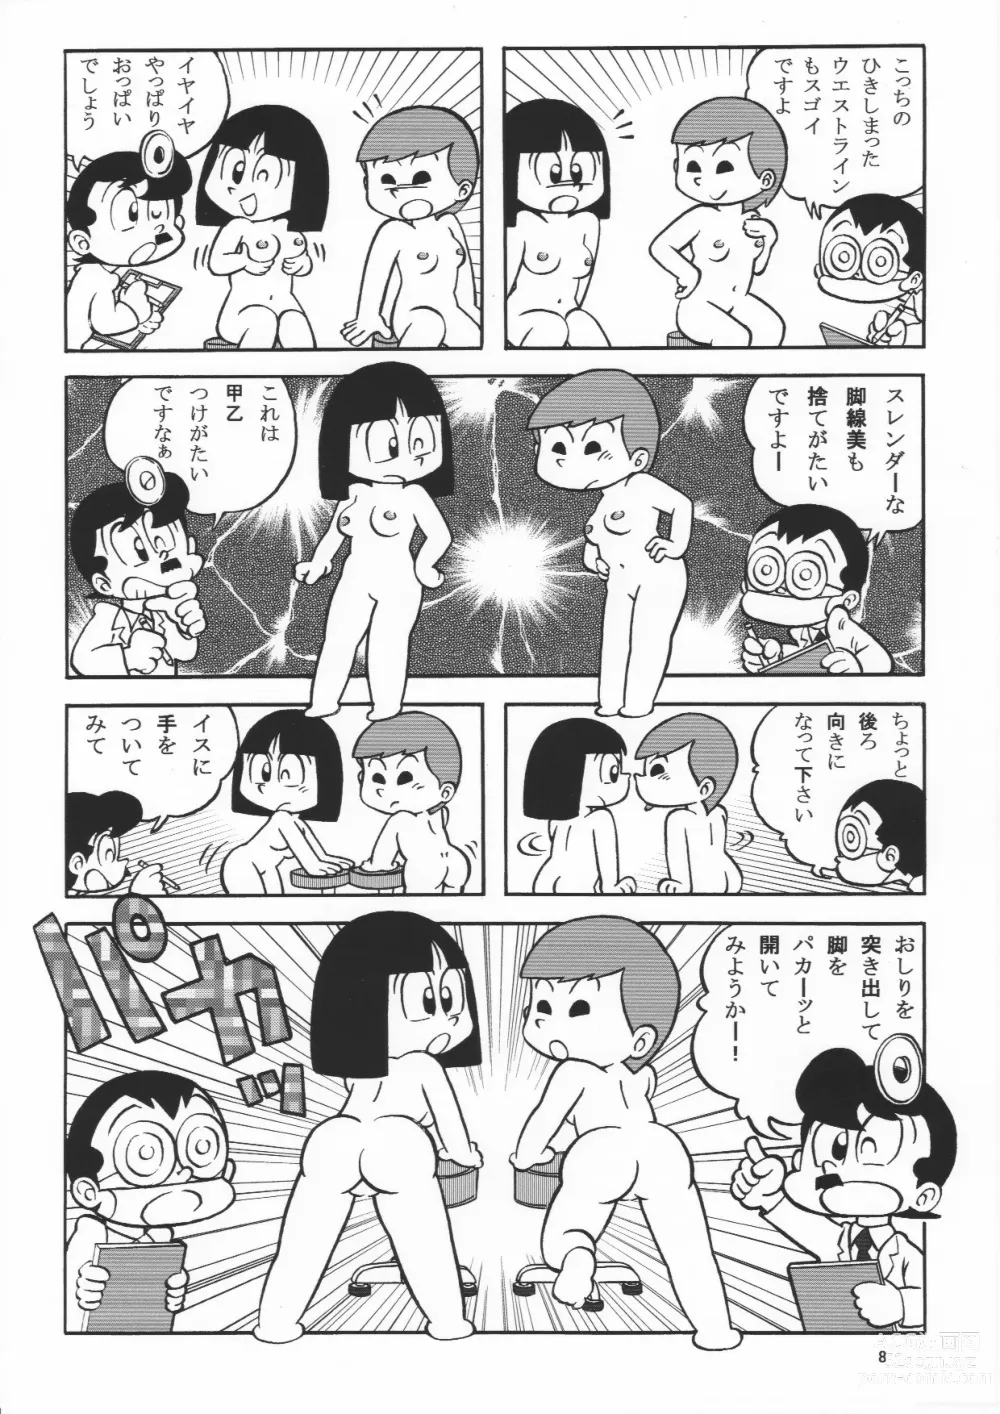 Page 8 of doujinshi (Maicching Machiko Sensei)